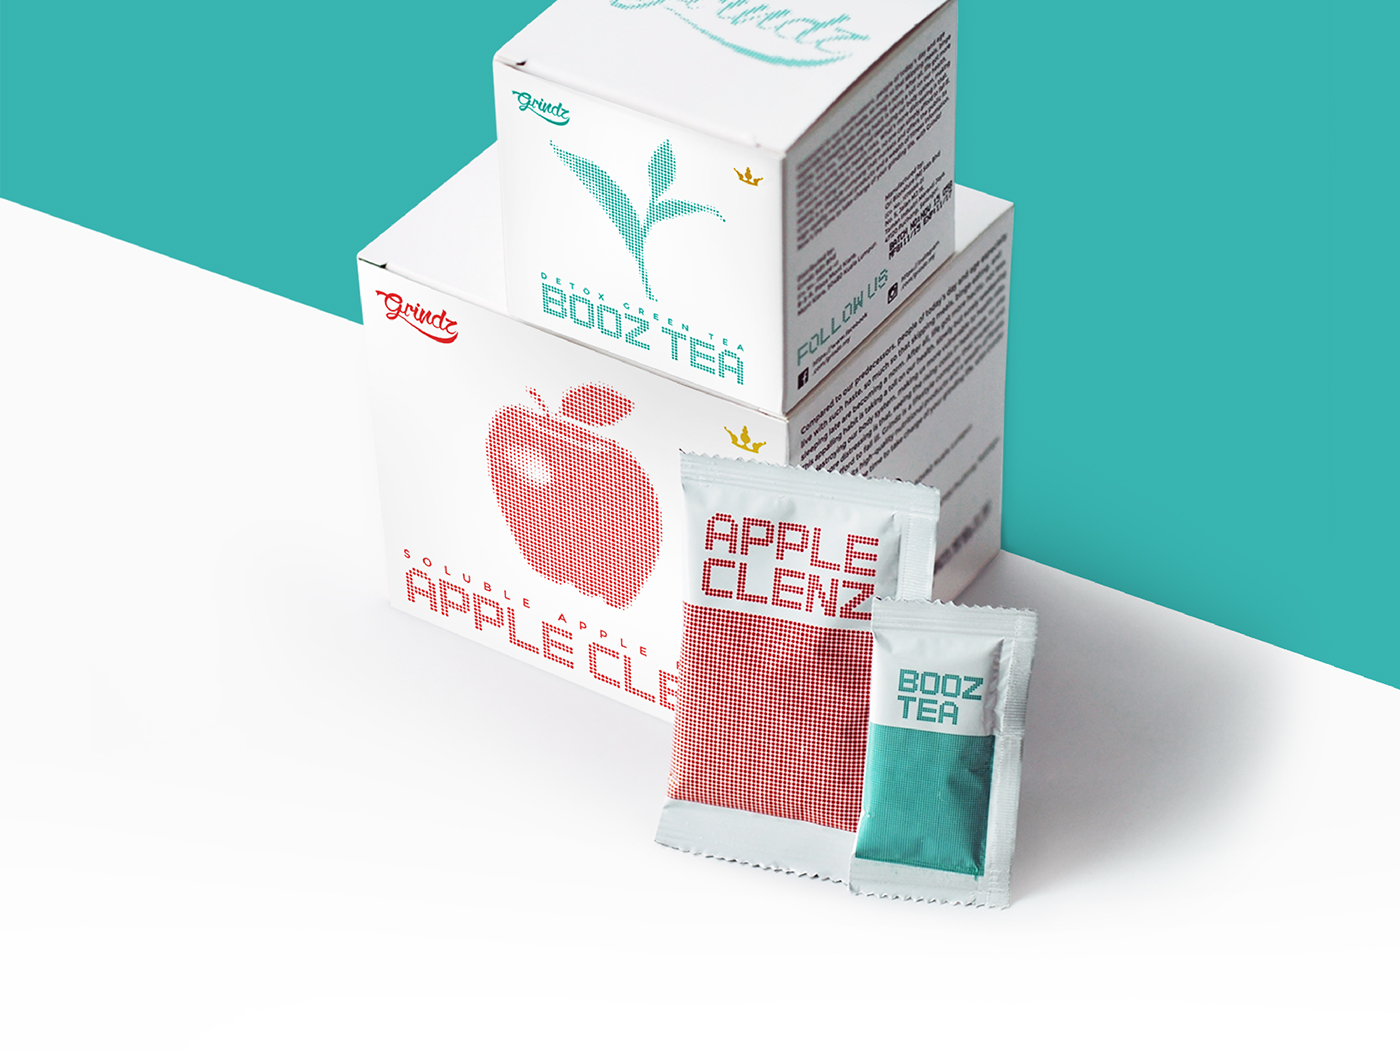 Grindz supplement main packaging design together with sachet design.